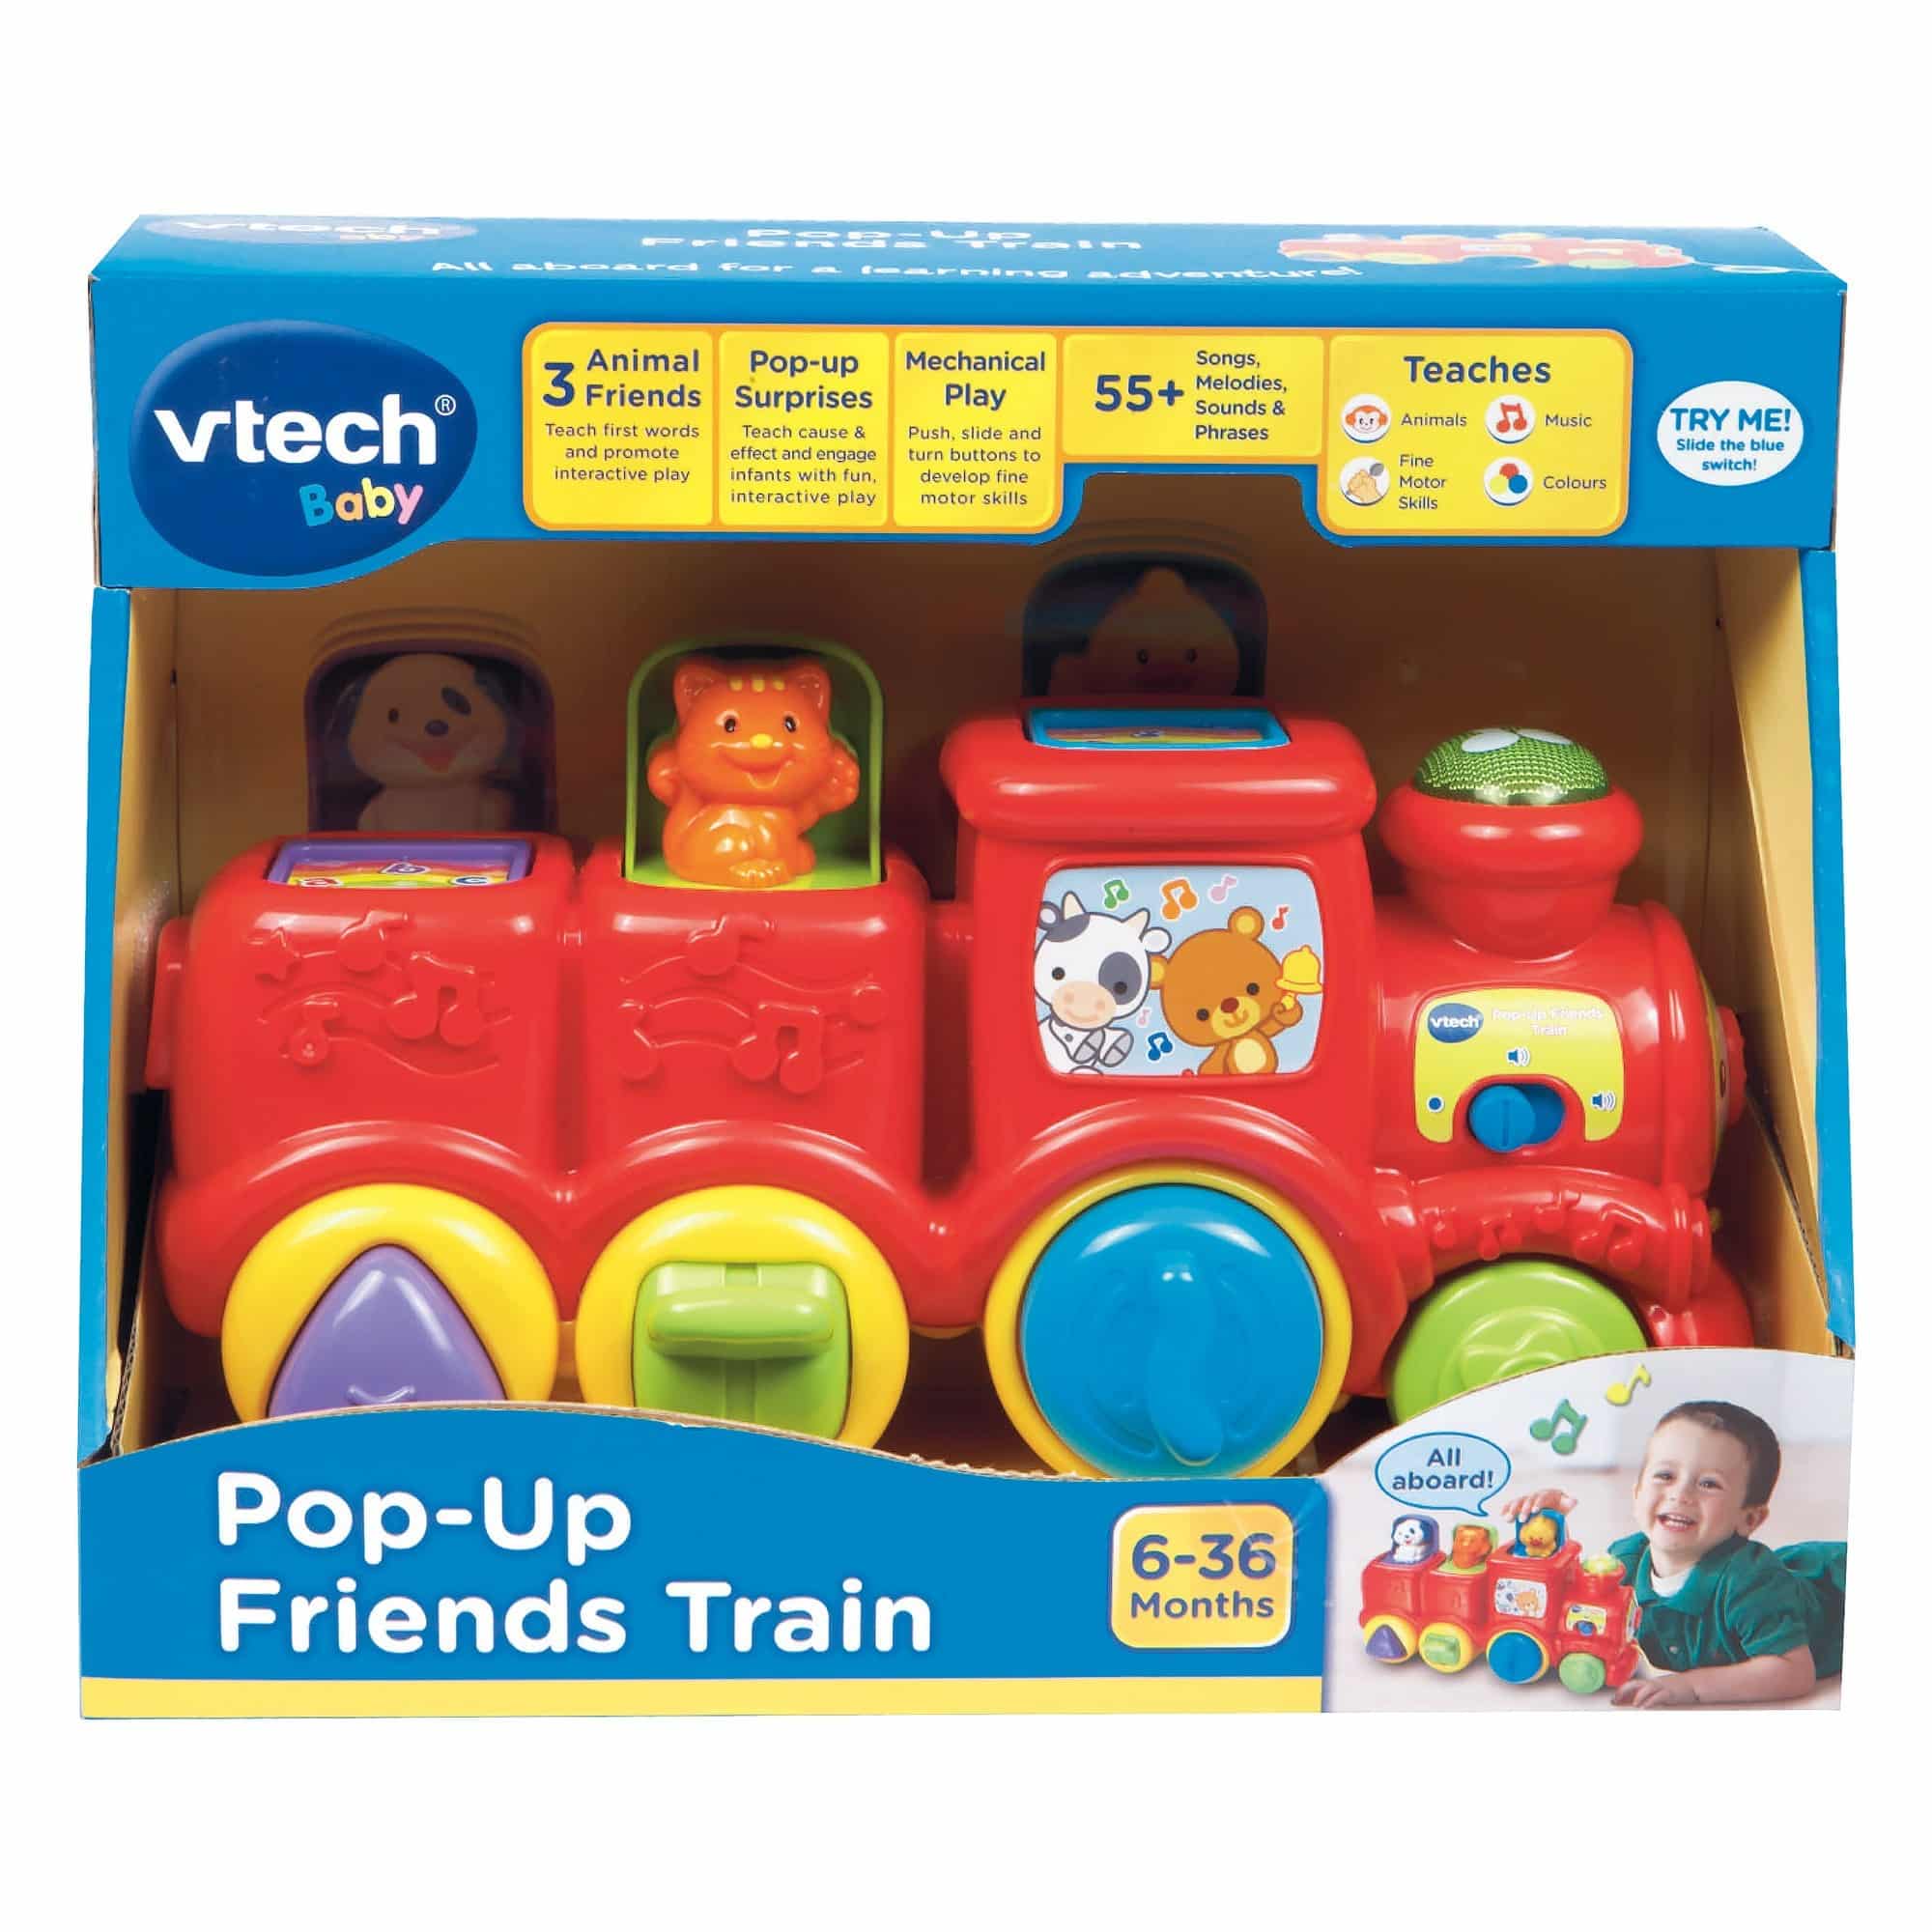 Vtech Baby - Pop-Up Friends Train